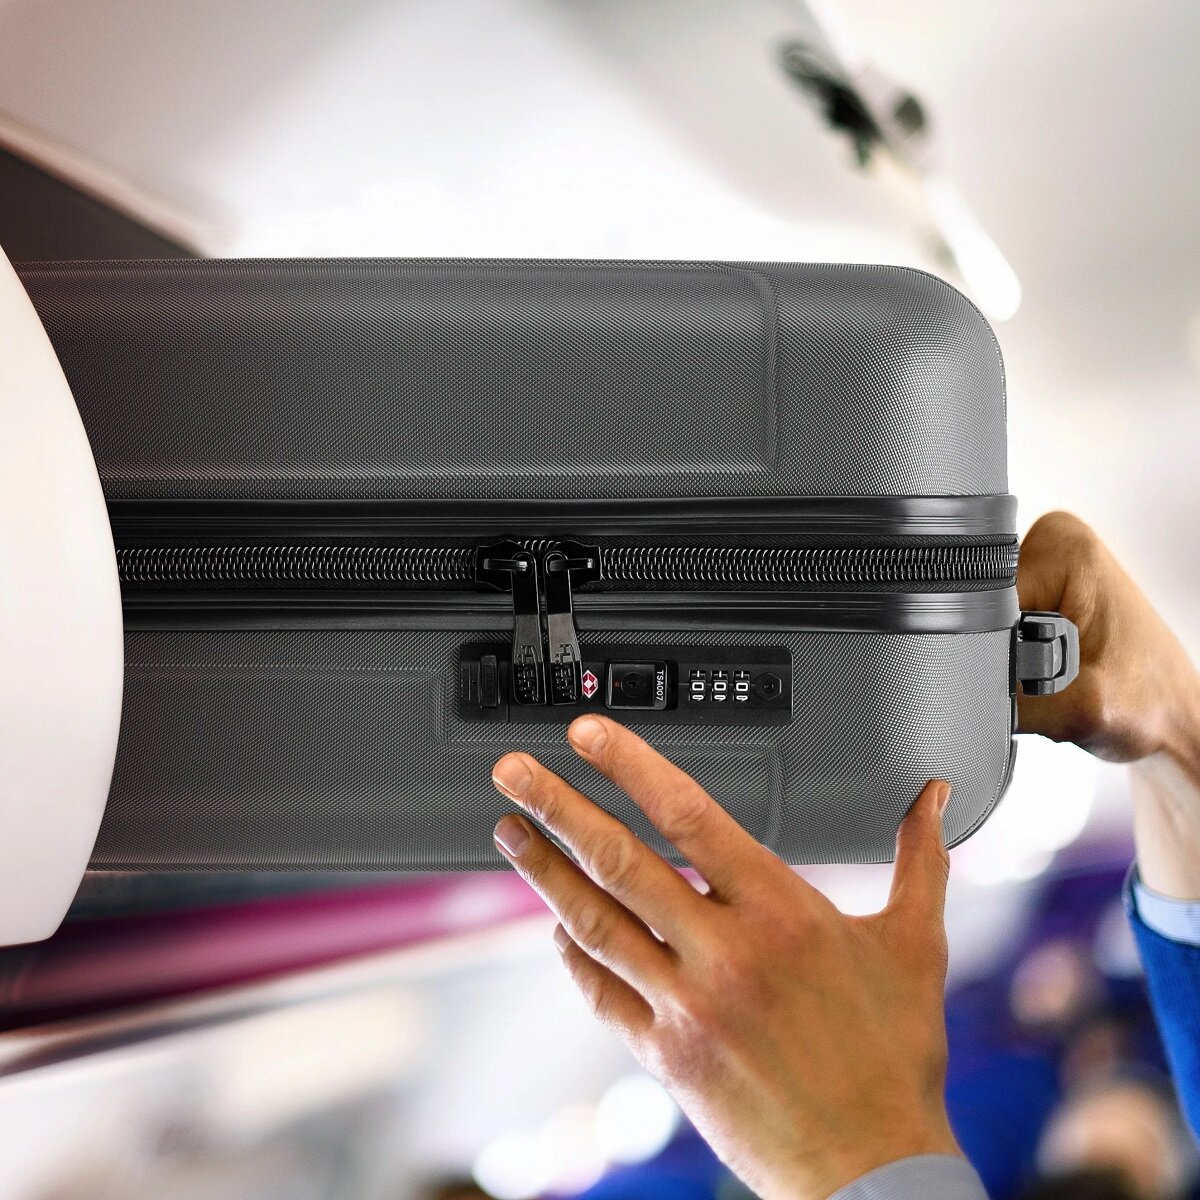 Walizka Anpa duża antracytowa  wkładanie  walizki w kabinie samolotu w miejsce na bagaże nad fotelem